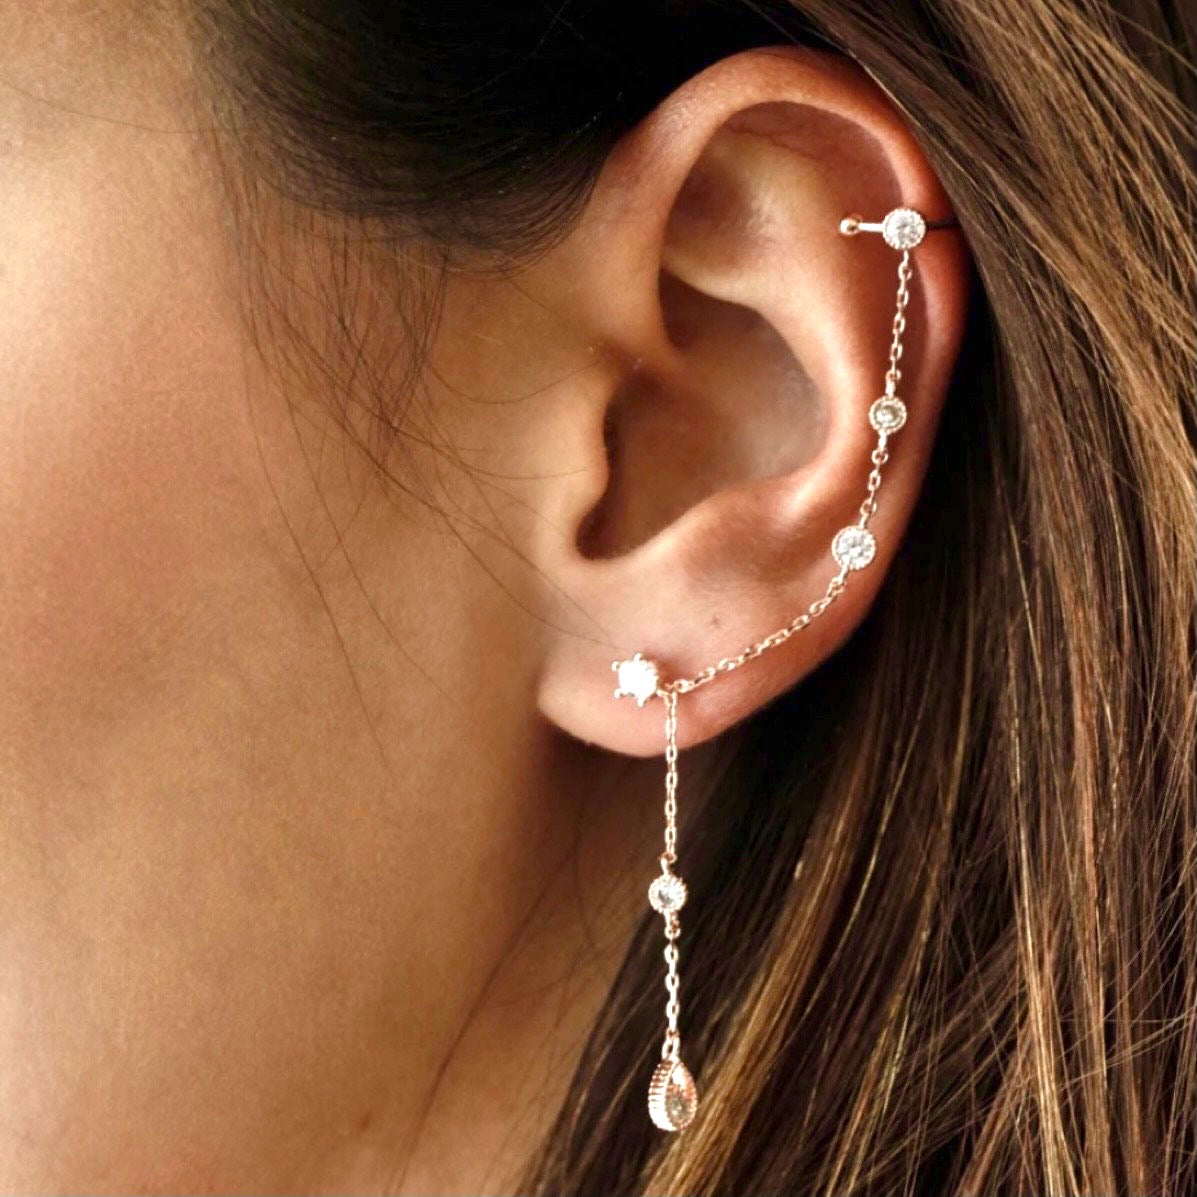 CZ DROP ear cuff earrings